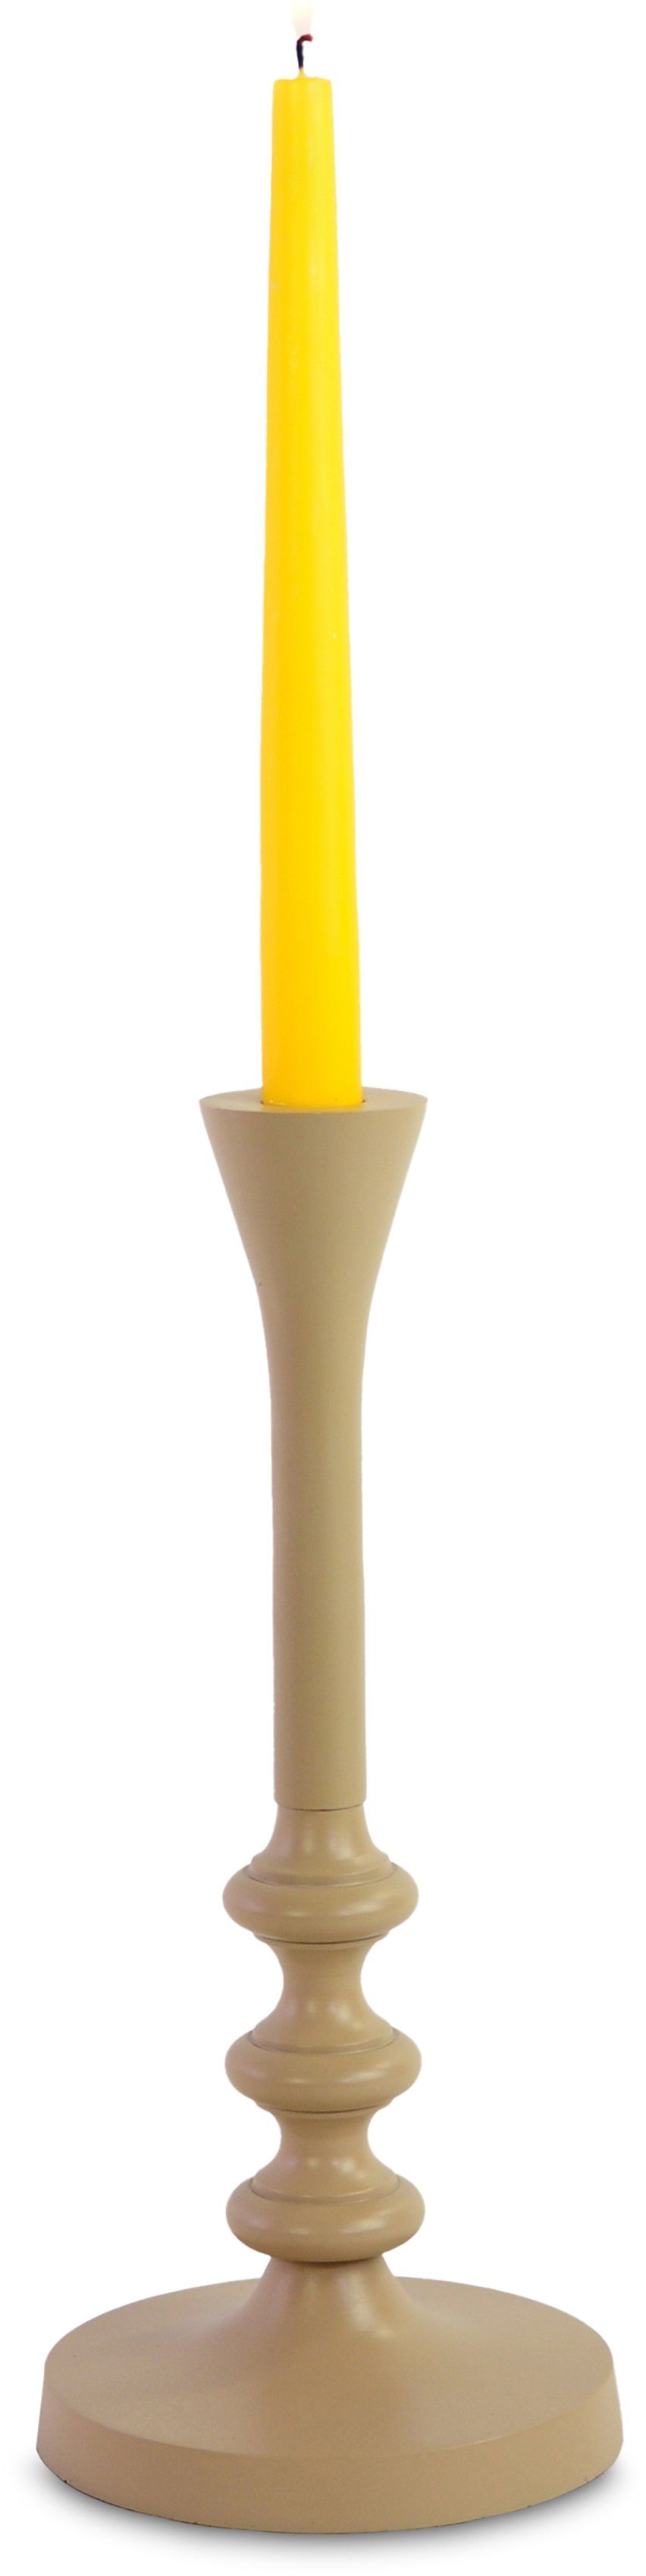 RIFFELMACHER & WEINBERGER Kerzenhalter Weihnachtsdeko, Kerzenleuchter, Kerzenständer, aus Aluminium, grau matt, Höhe 30 cm | Kerzenständer